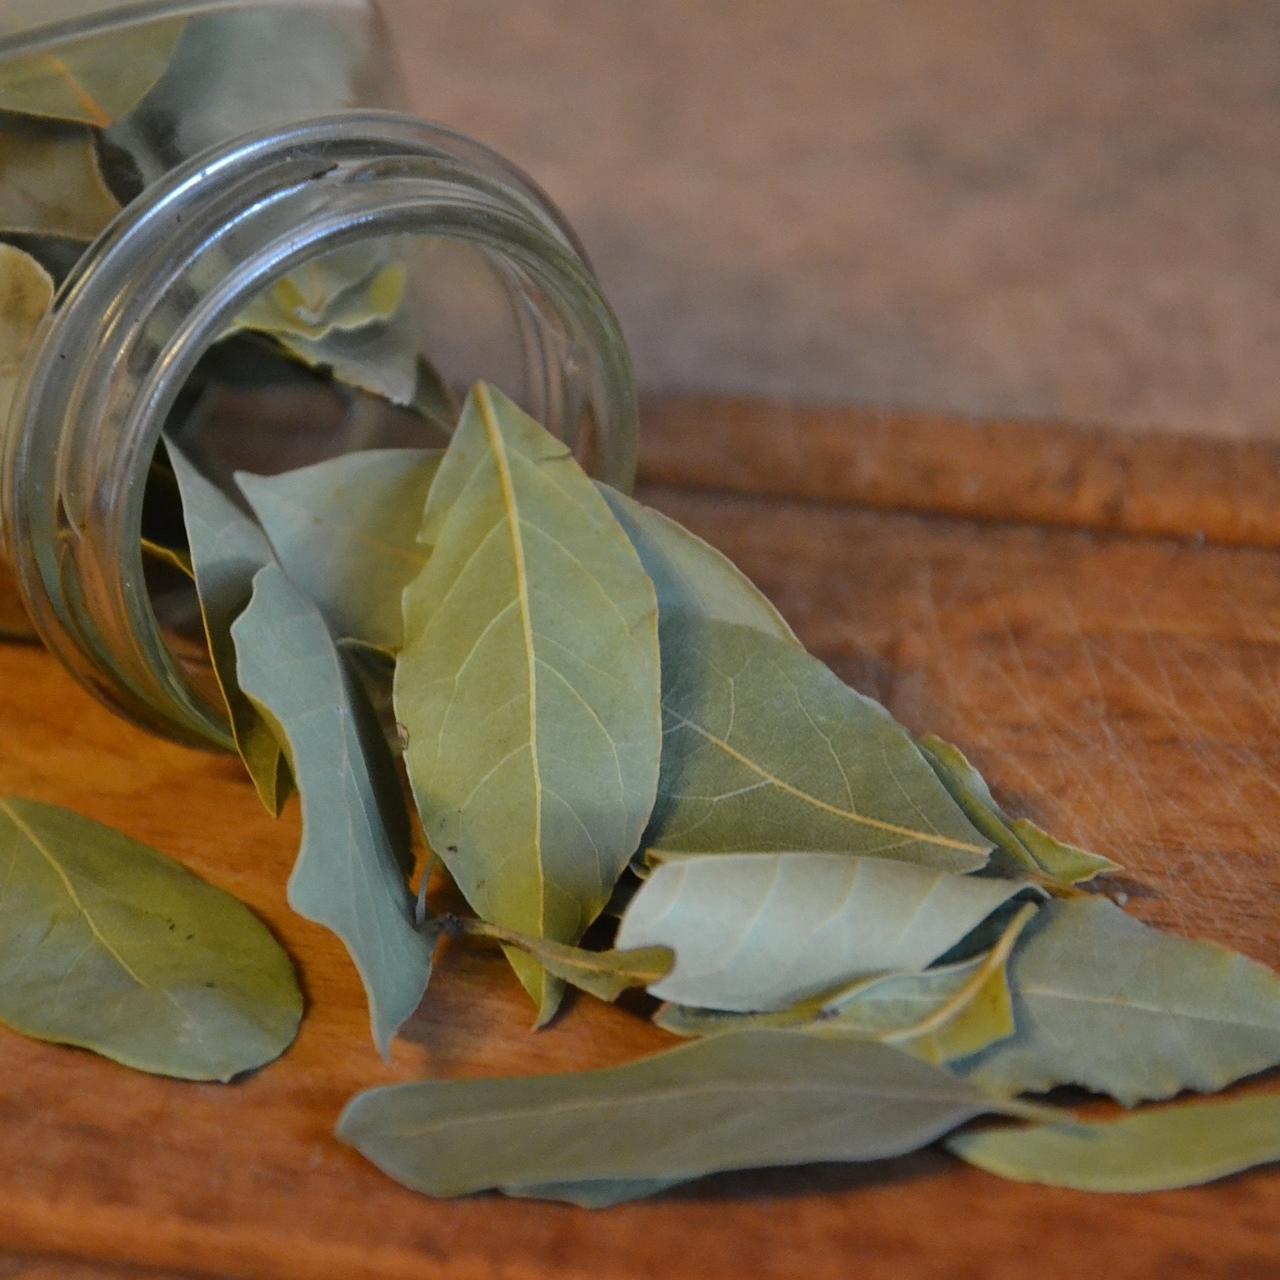 A jar of bay leaves